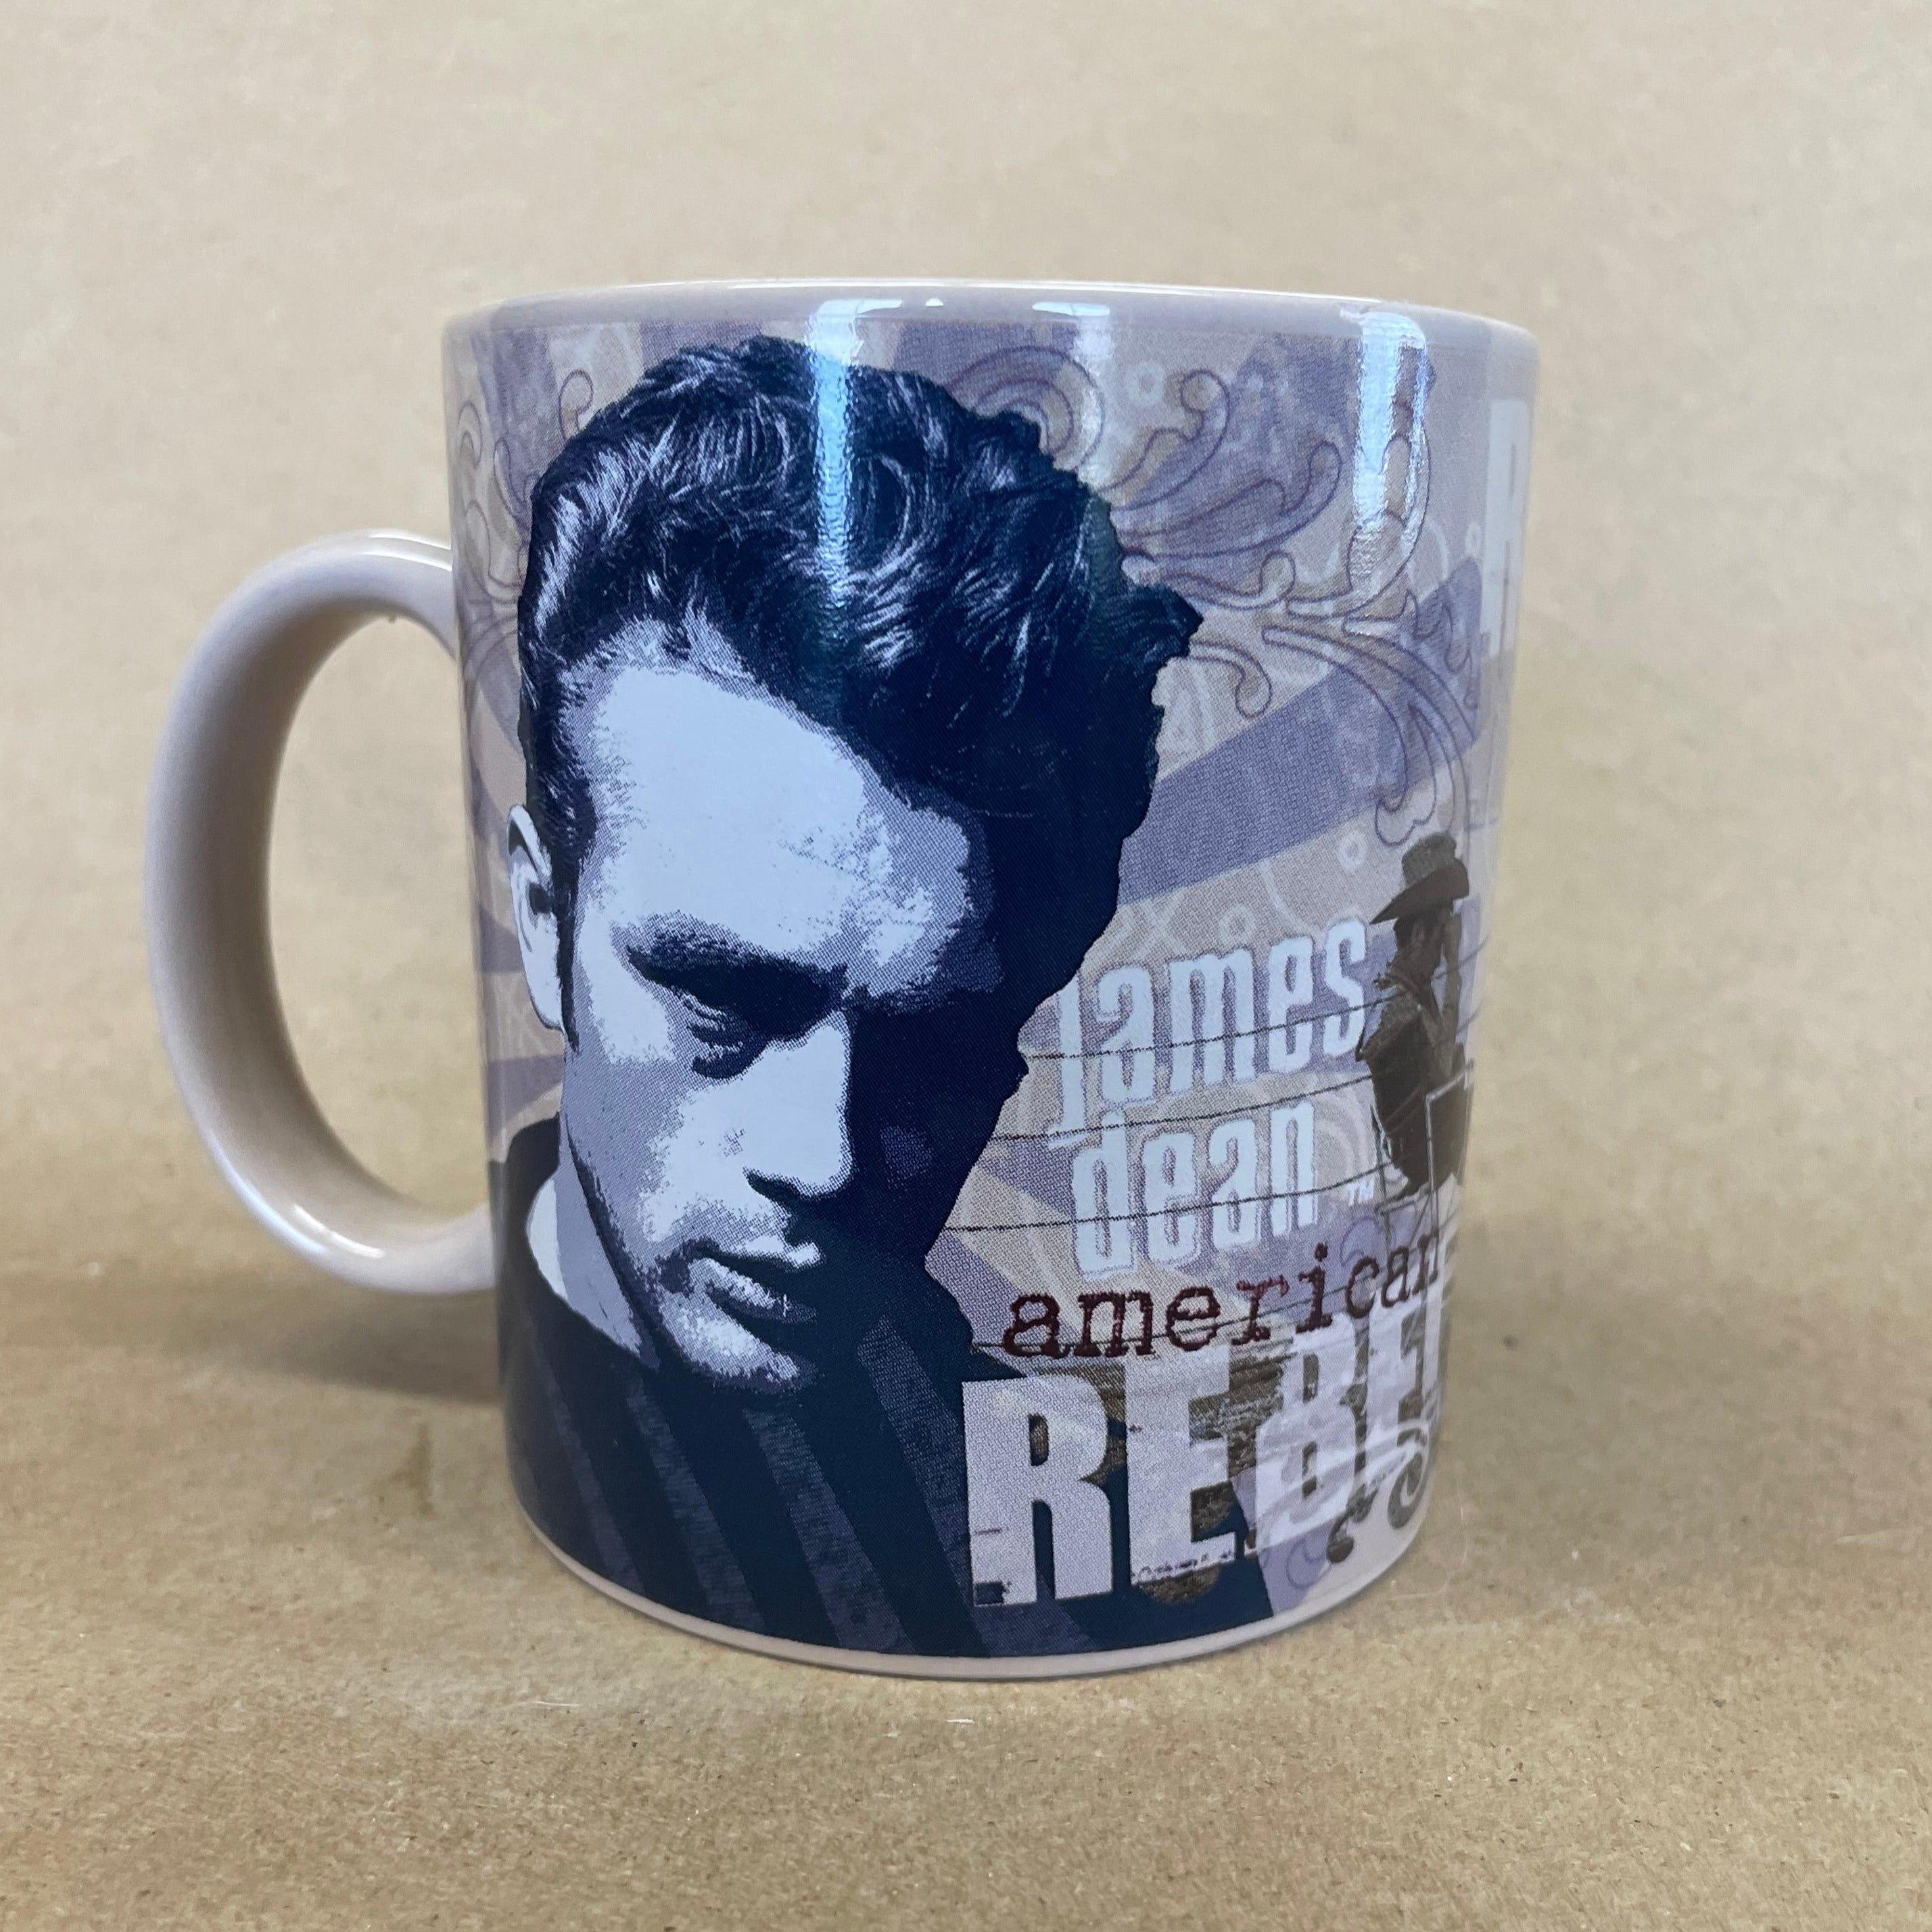 James Dean American Rebel Mug-2006